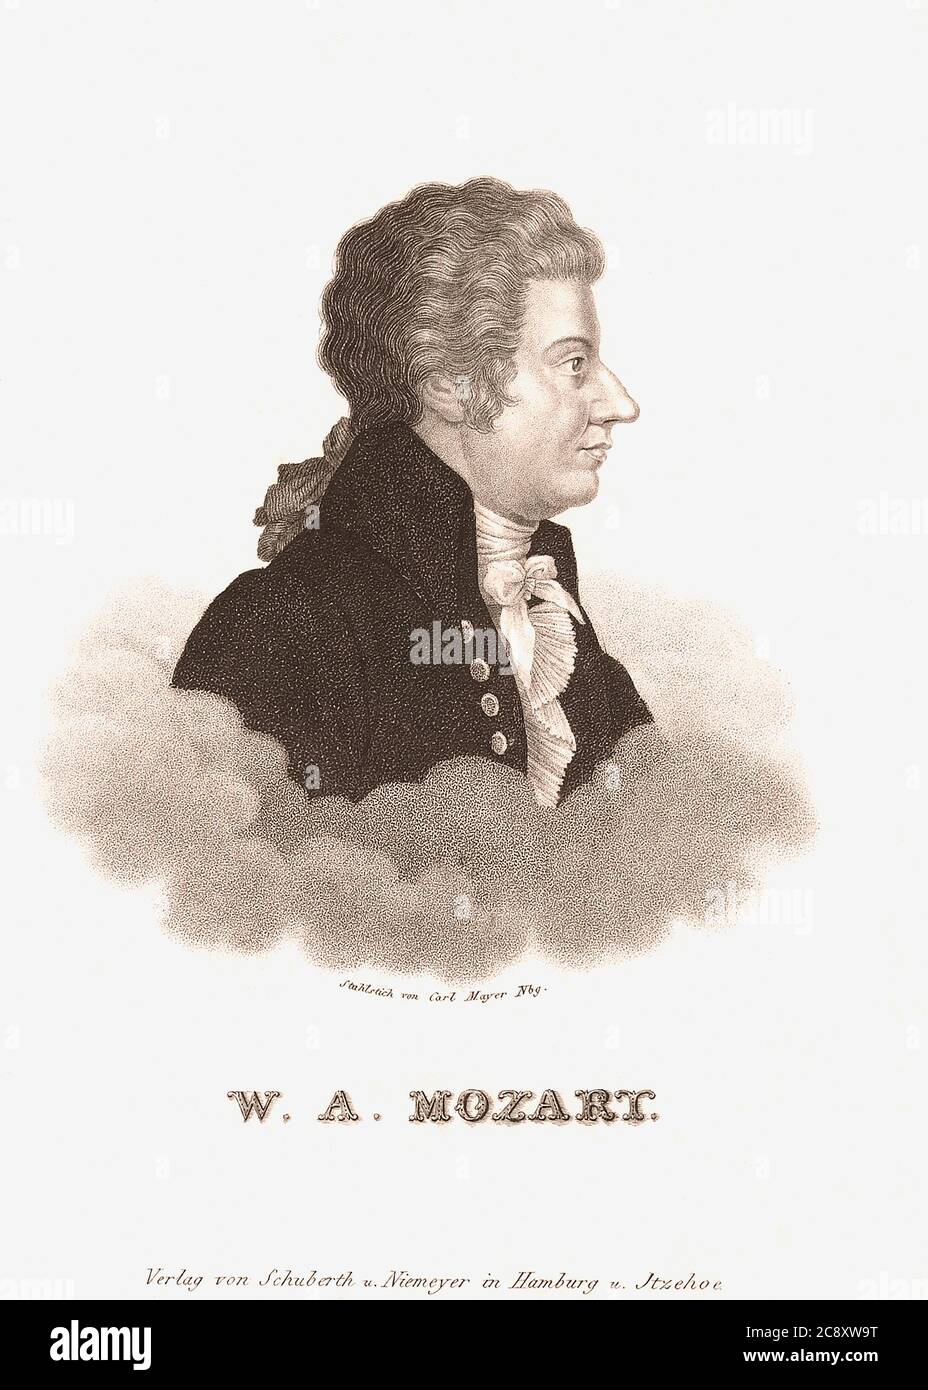 Wolfgang Amadeus Mozart, 1756 – 1791, getauft als Johannes Chrysostomus Wolfgangus Theophilus Mozart. Produktiver und einflussreicher Komponist der Klassik. Nach einem Stich des deutschen Künstlers Carl Mayer aus dem 19. Jahrhundert. Stockfoto